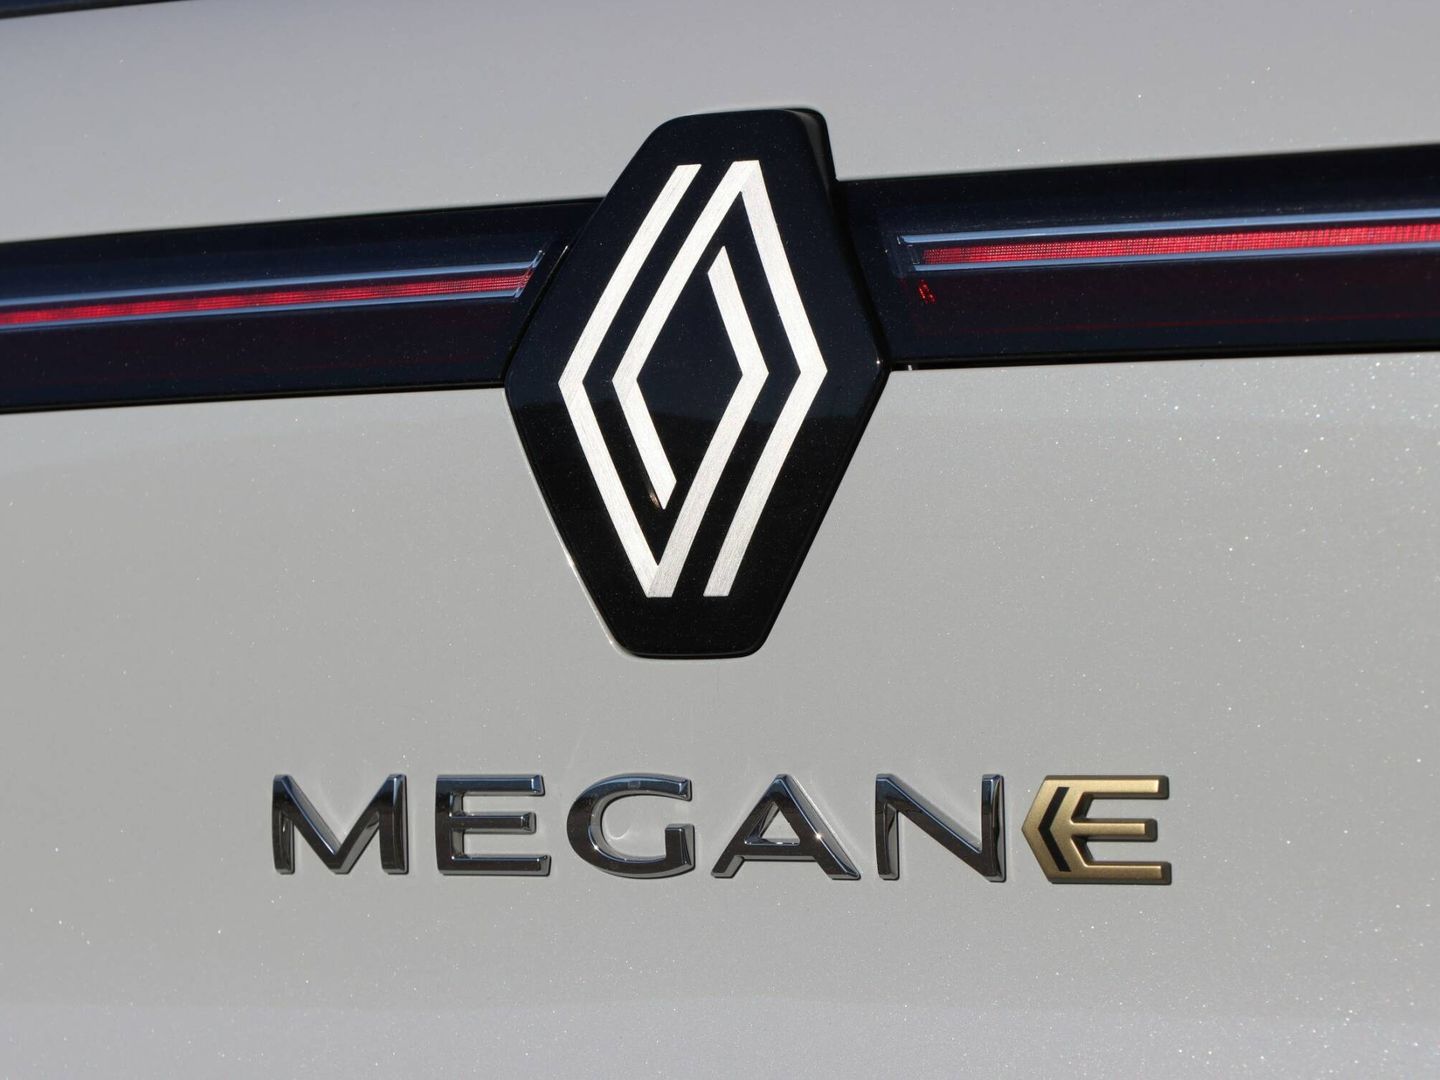 El nuevo Mégane solo será eléctrico, aunque en el futuro podría incorporar otras soluciones.